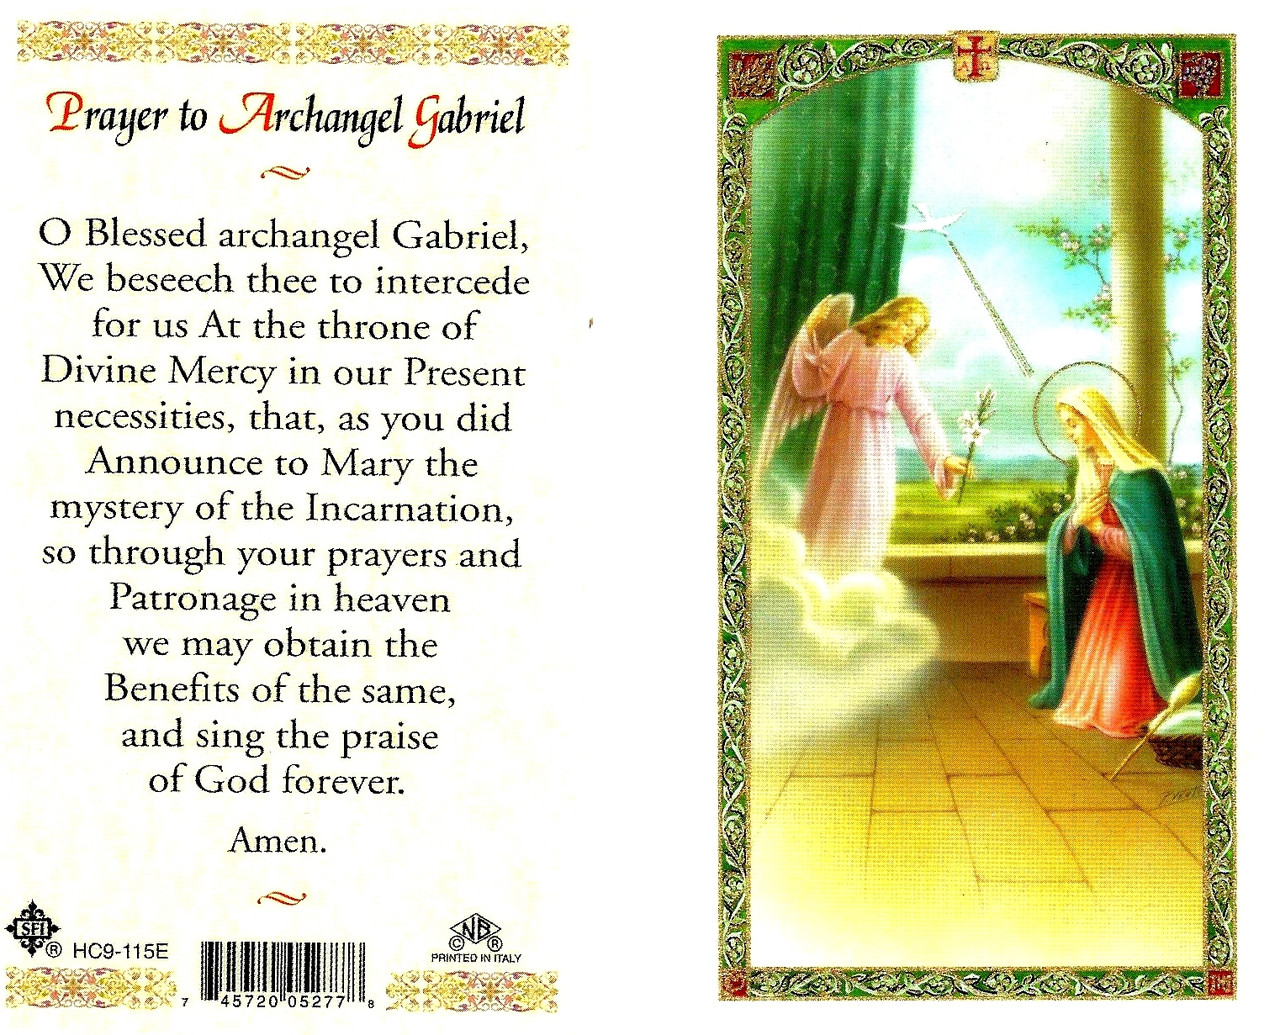 Prayer to Archangel Gabriel, Laminated prayer card